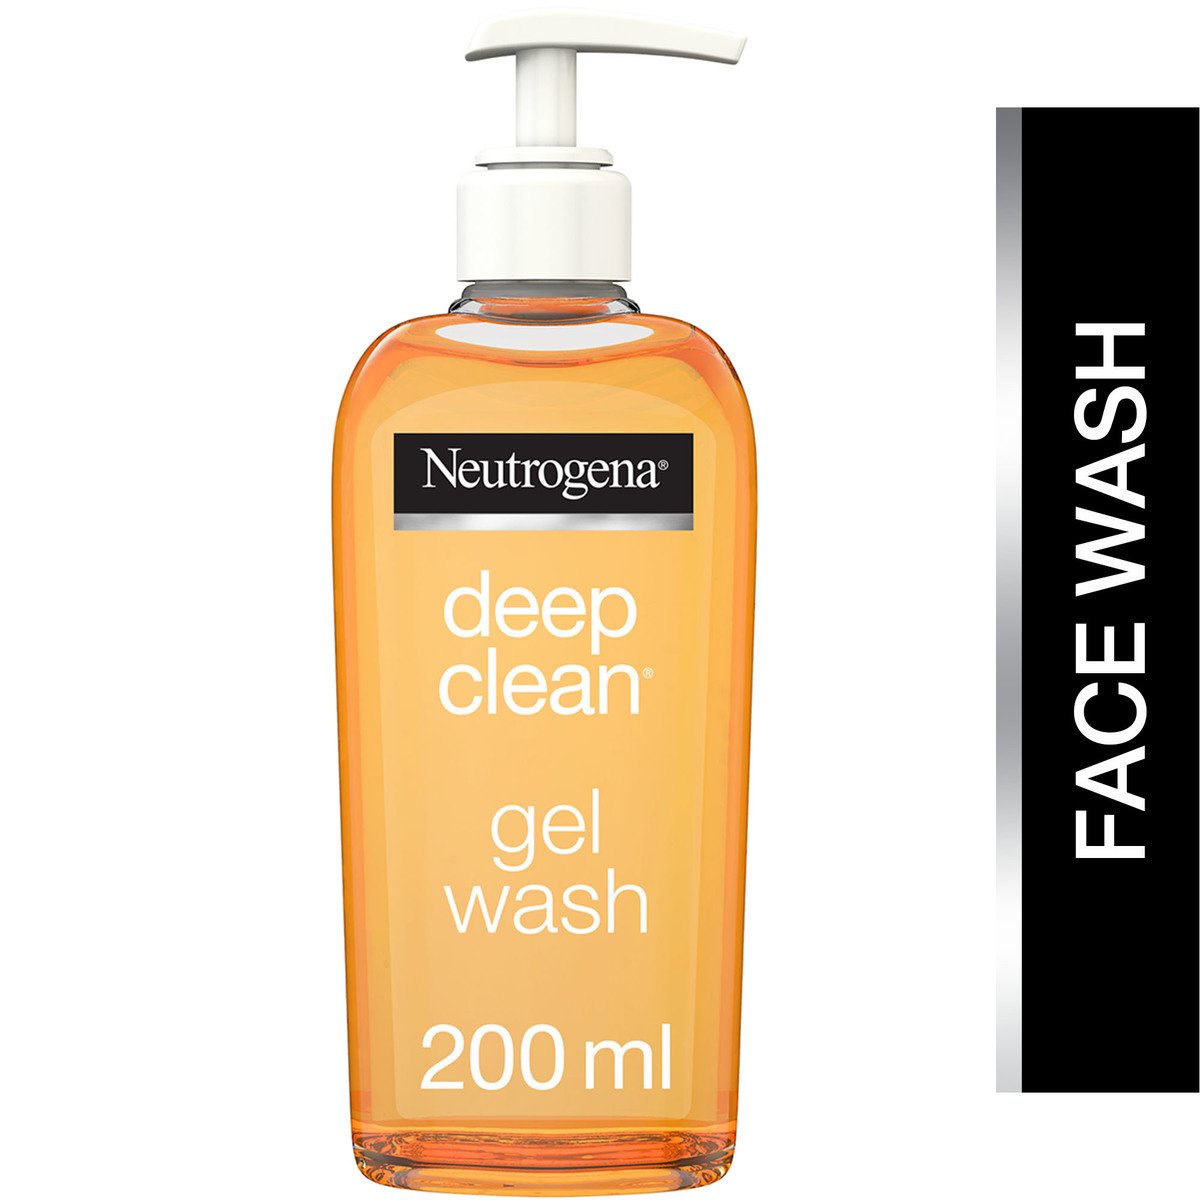 اشتري قم بشراء نيتروجينا غسول الوجه للتنظيف العميق 200 مل Online at Best Price من الموقع - من لولو هايبر ماركت Face Wash في الامارات